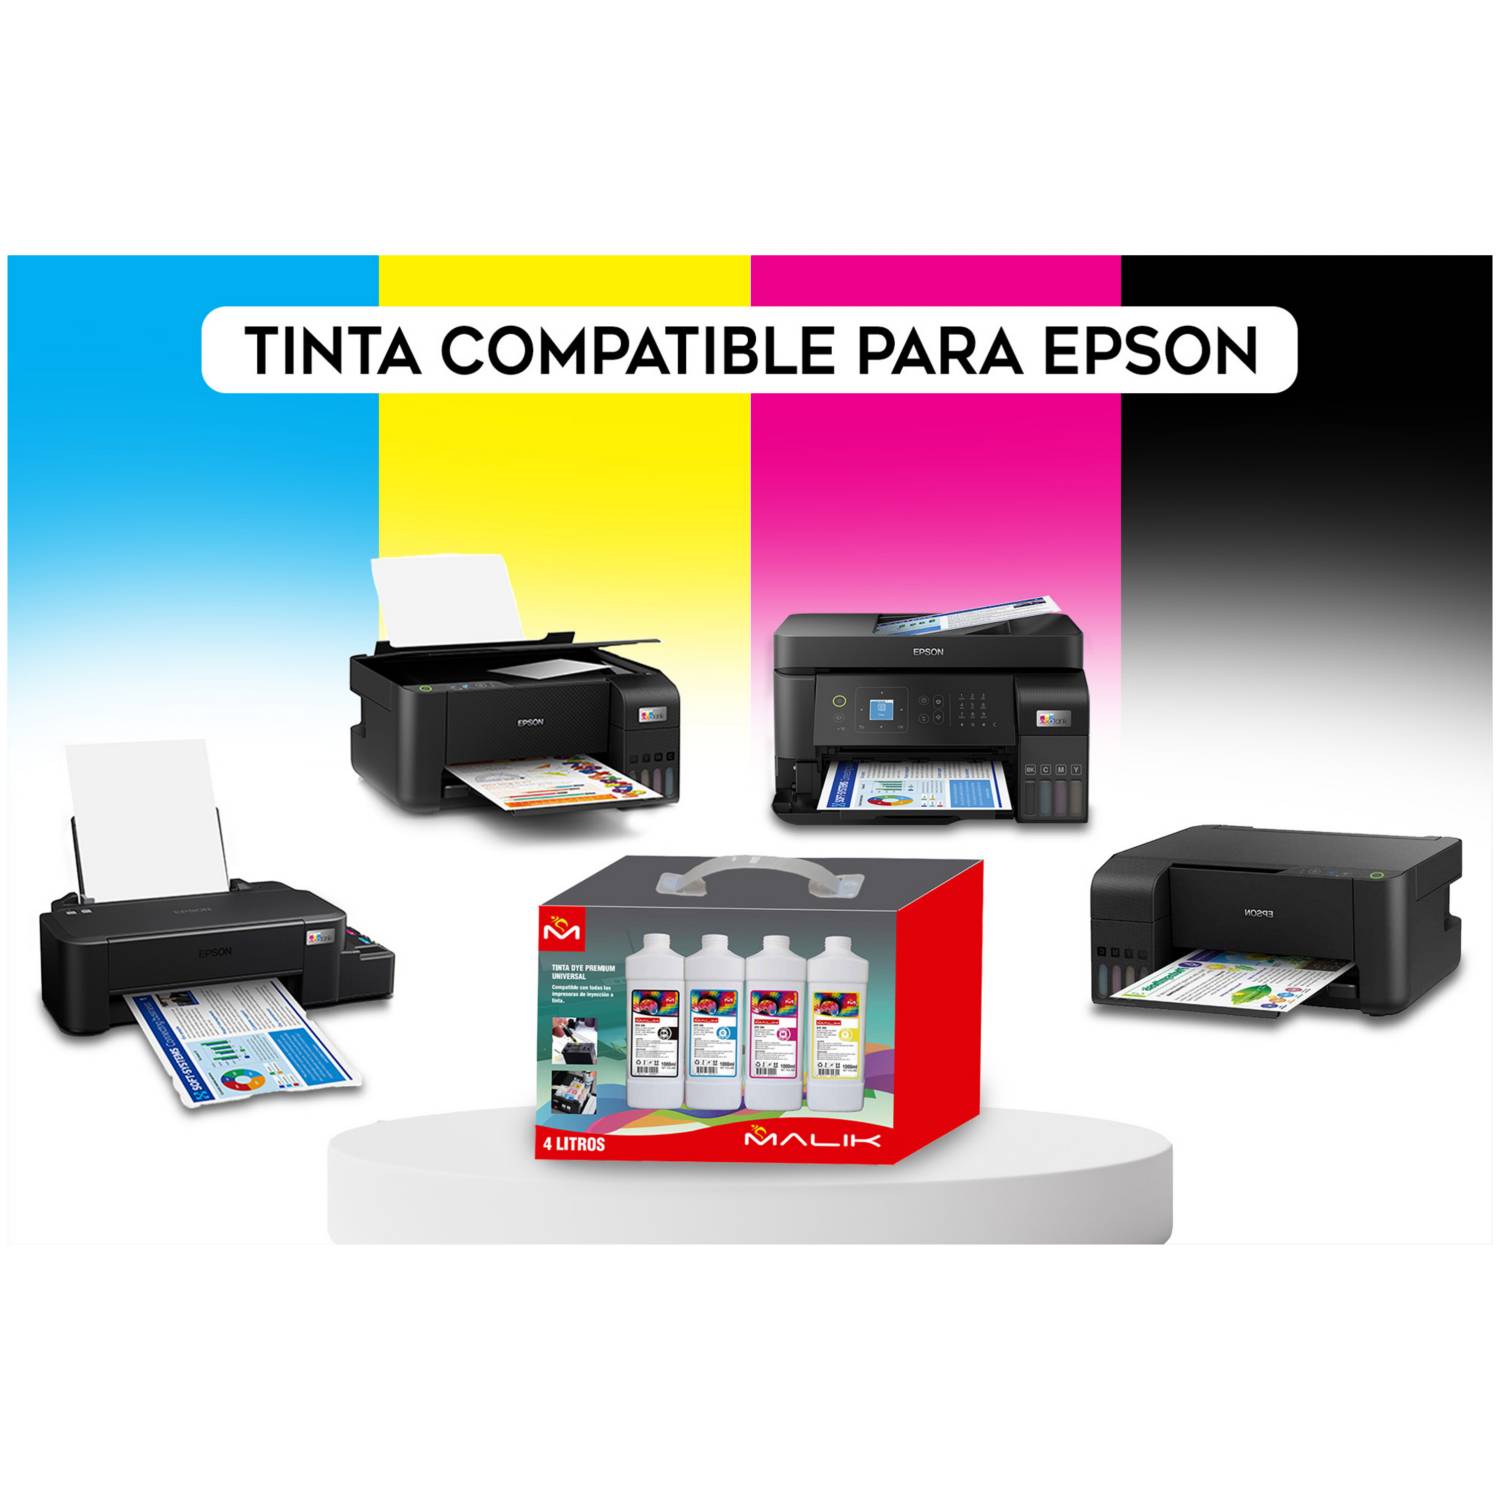 Impresora Epson L121